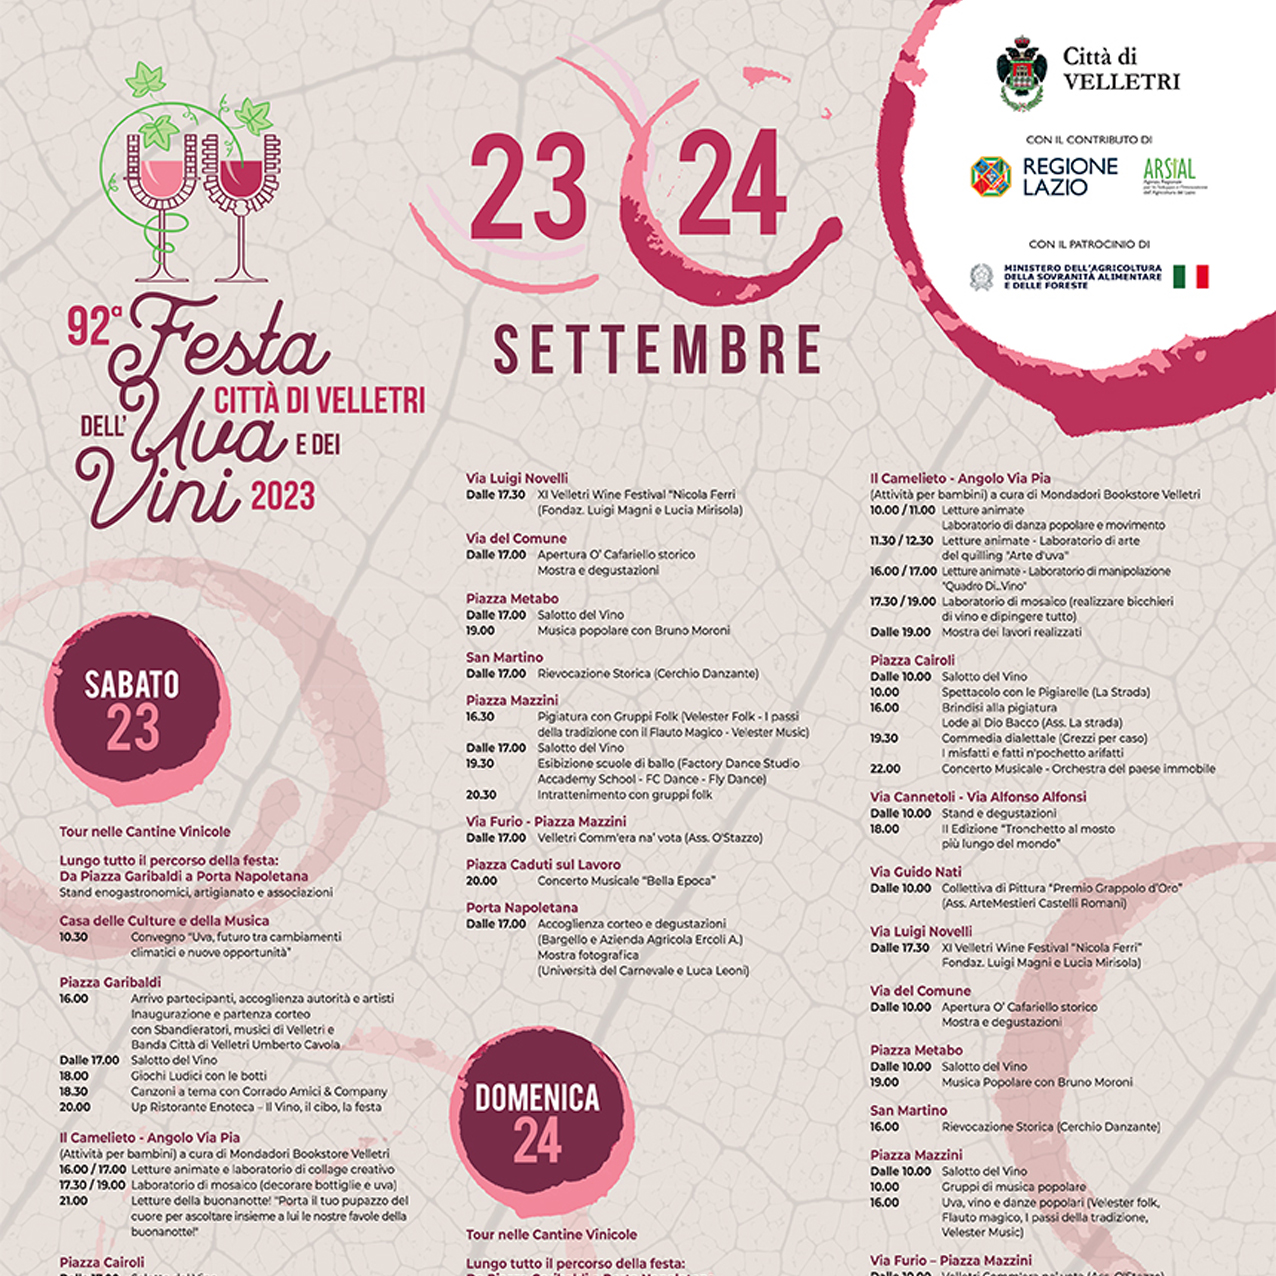 Ecco il programma ufficiale della 92esima Festa dell’Uva e dei Vini a Velletri (Sabato 30 Settembre e domenica 01 Ottobre)